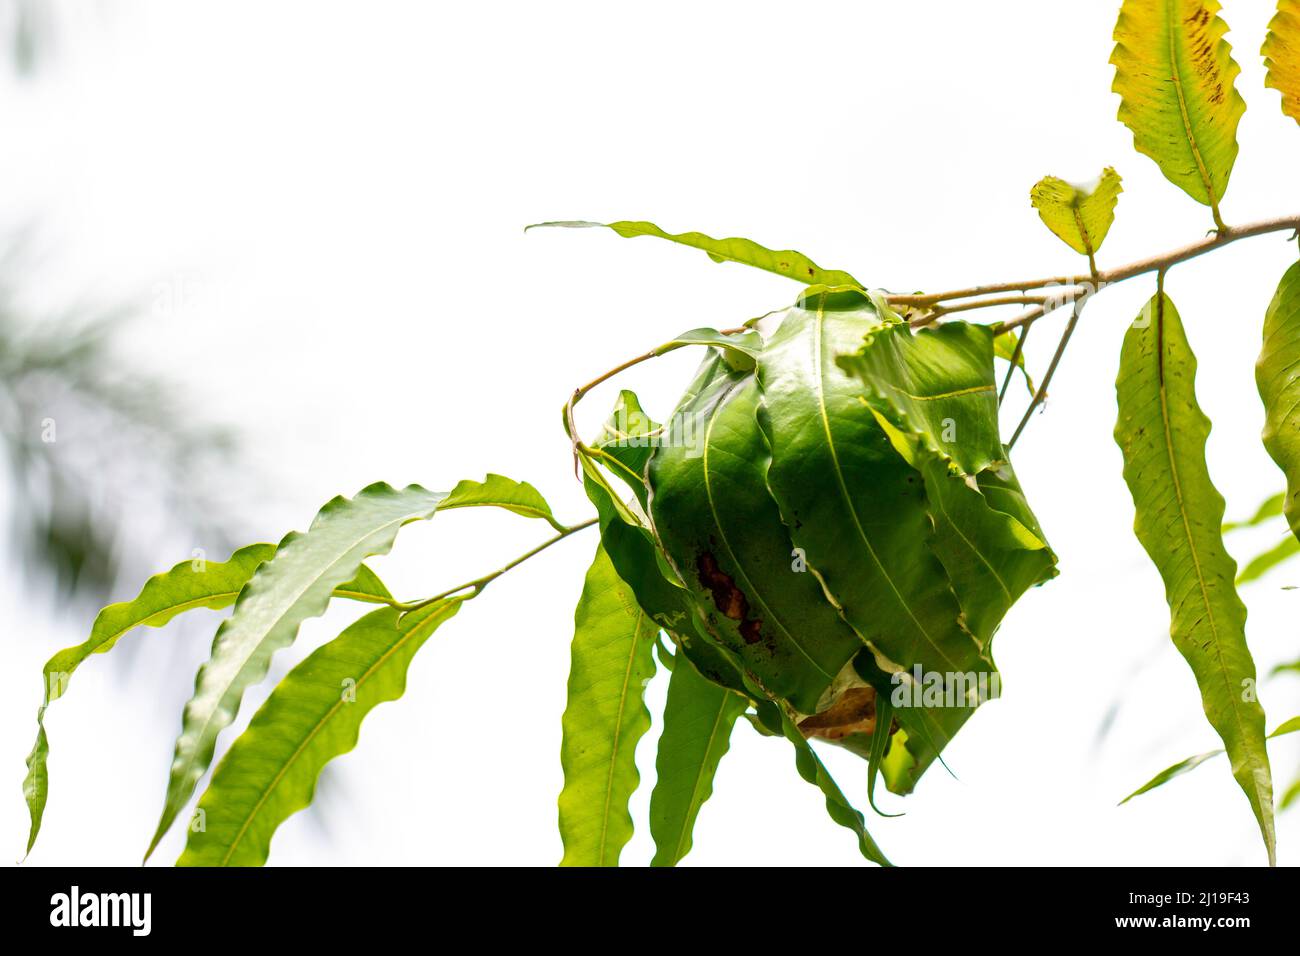 Eine Gruppe von Ameisen, die in einem Baumzweig nisten, der leicht breite grüne Blätter hat, einen klaren Himmelshintergrund Stockfoto